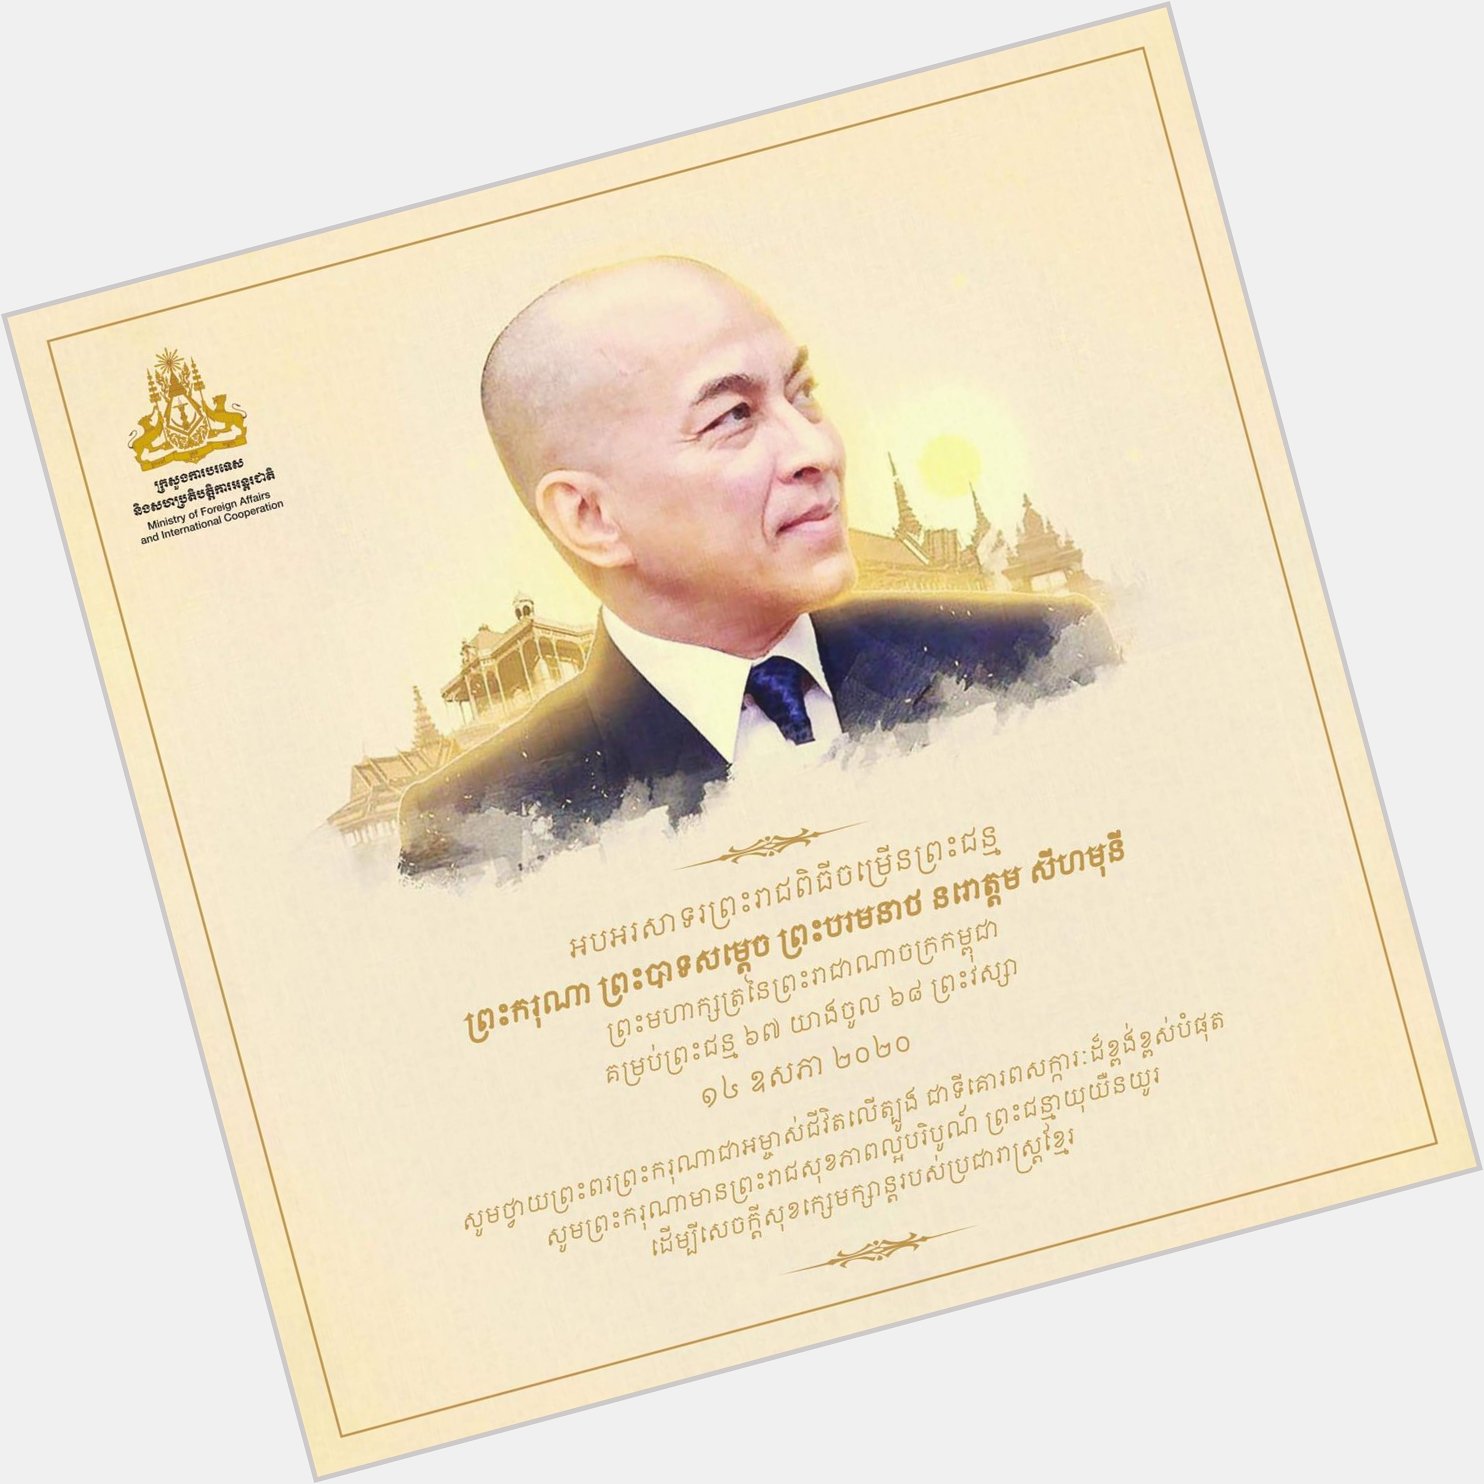 Happy Birthday to His Majesty the King of Cambodia Norodom Sihamoni! 
Cr: MFA 